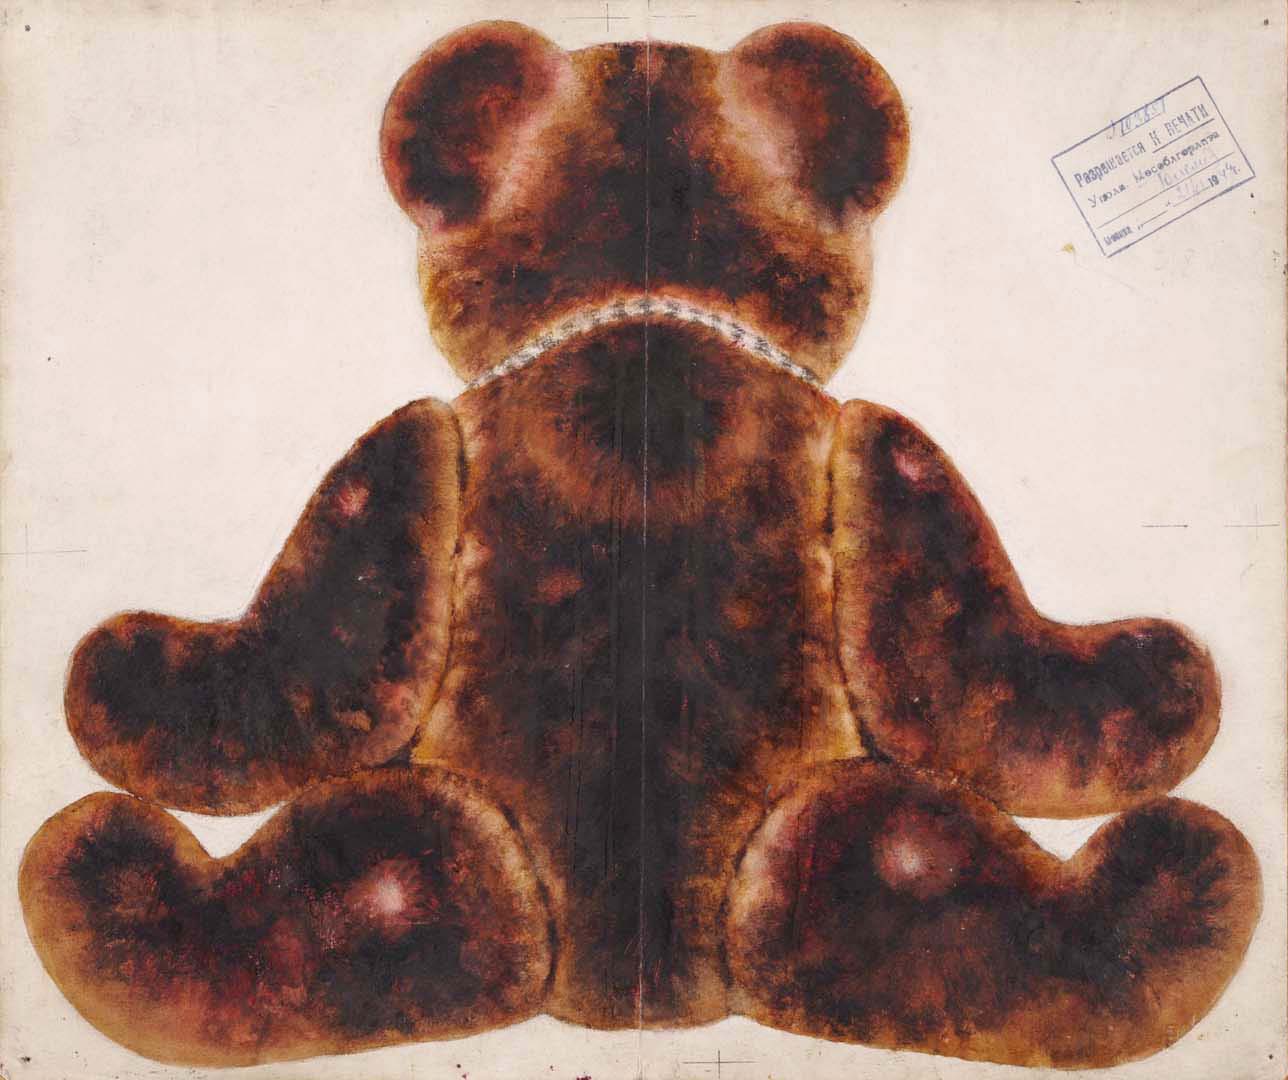 Teddy Bear, three works